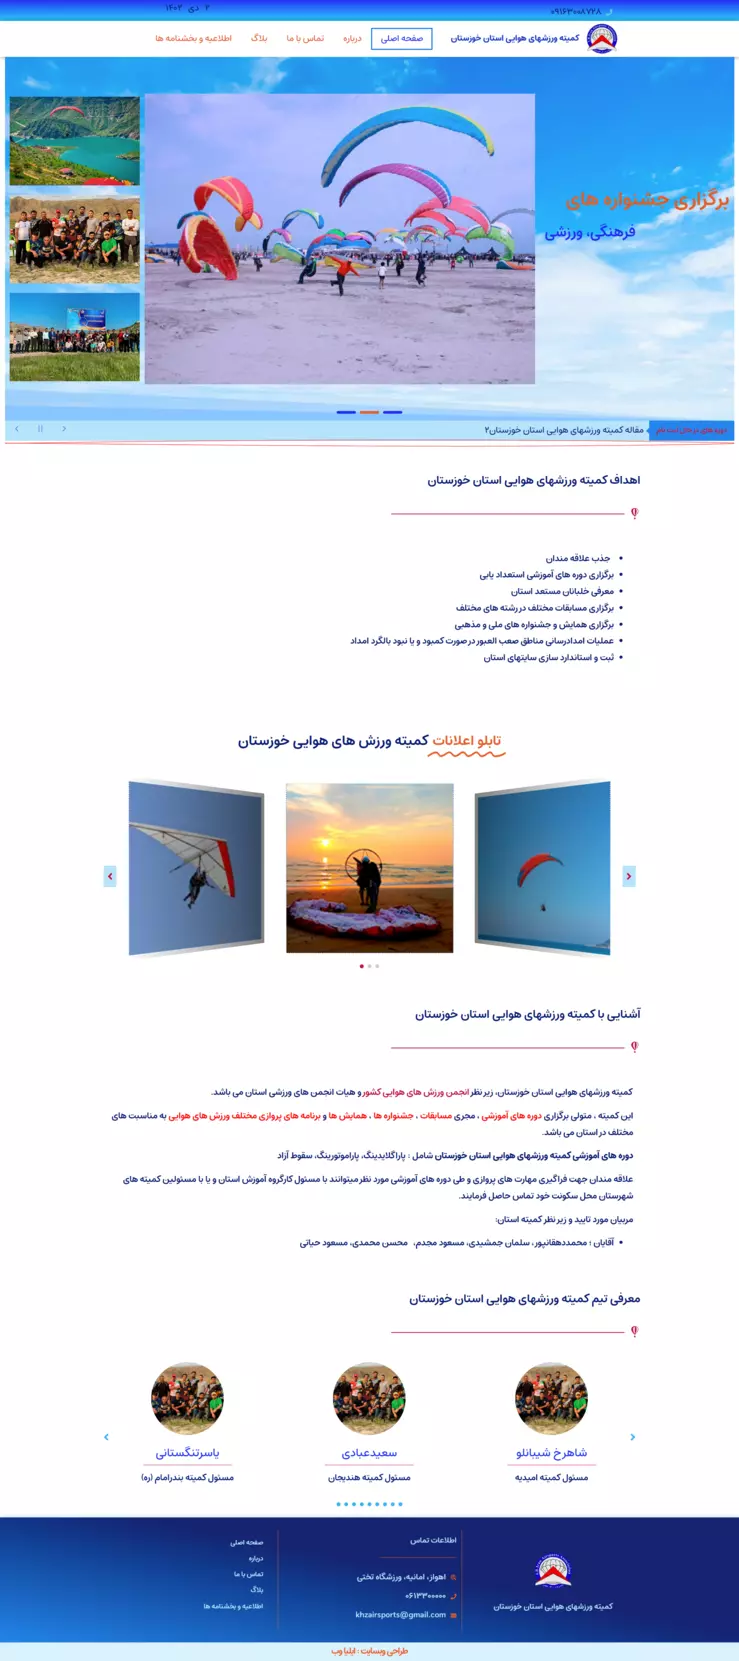 طراحی سایت کمیته ورزشهای هوایی استان خوزستان - گروه دیجیتال مارکتینگ ایلیا وب - مریم لرکی